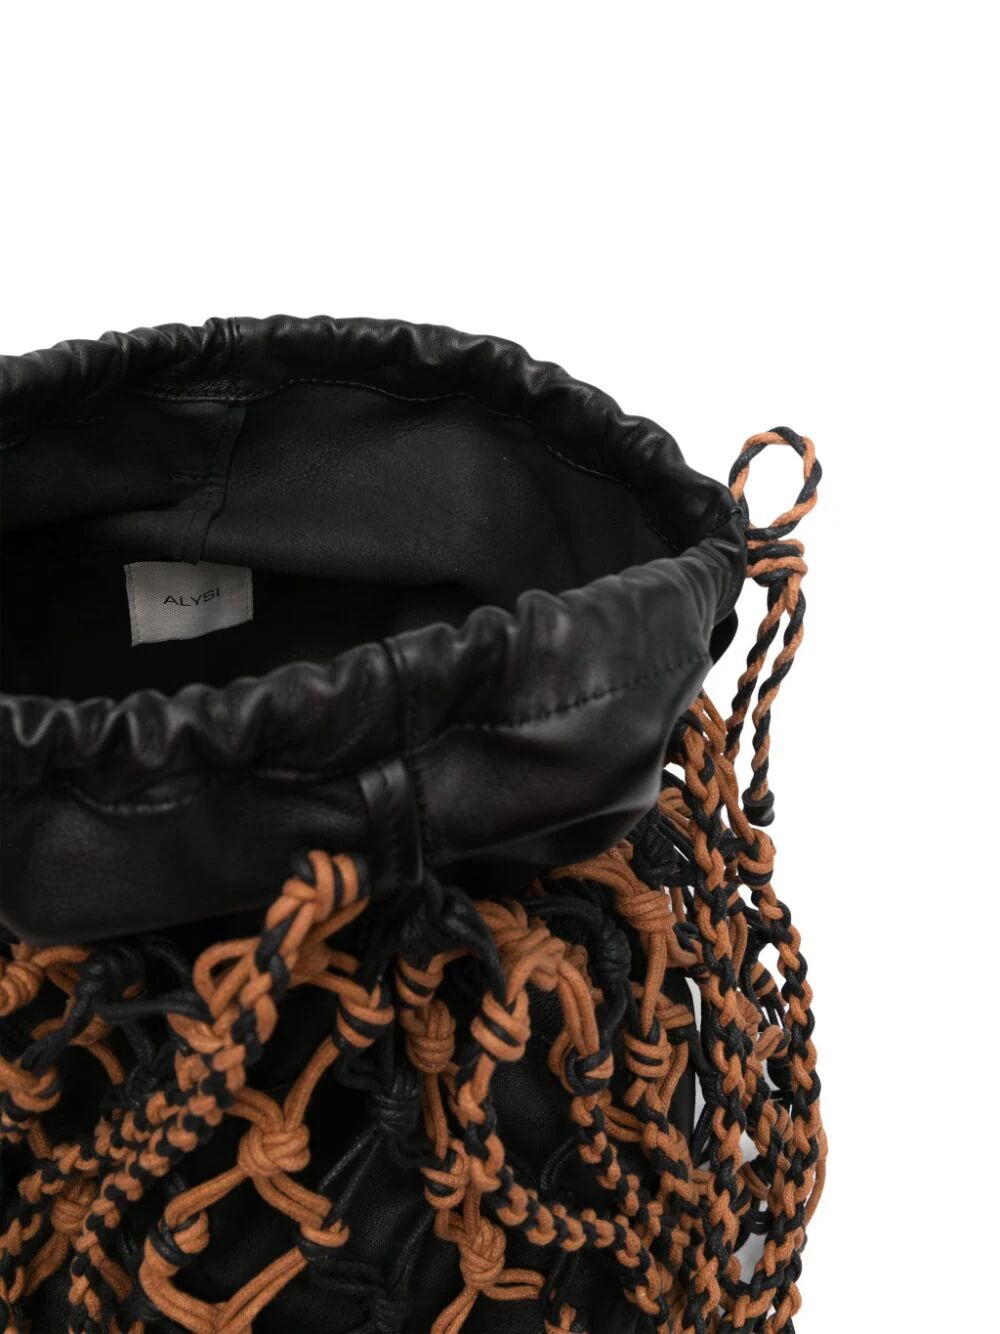 Woven leather basket-style shoulder bag